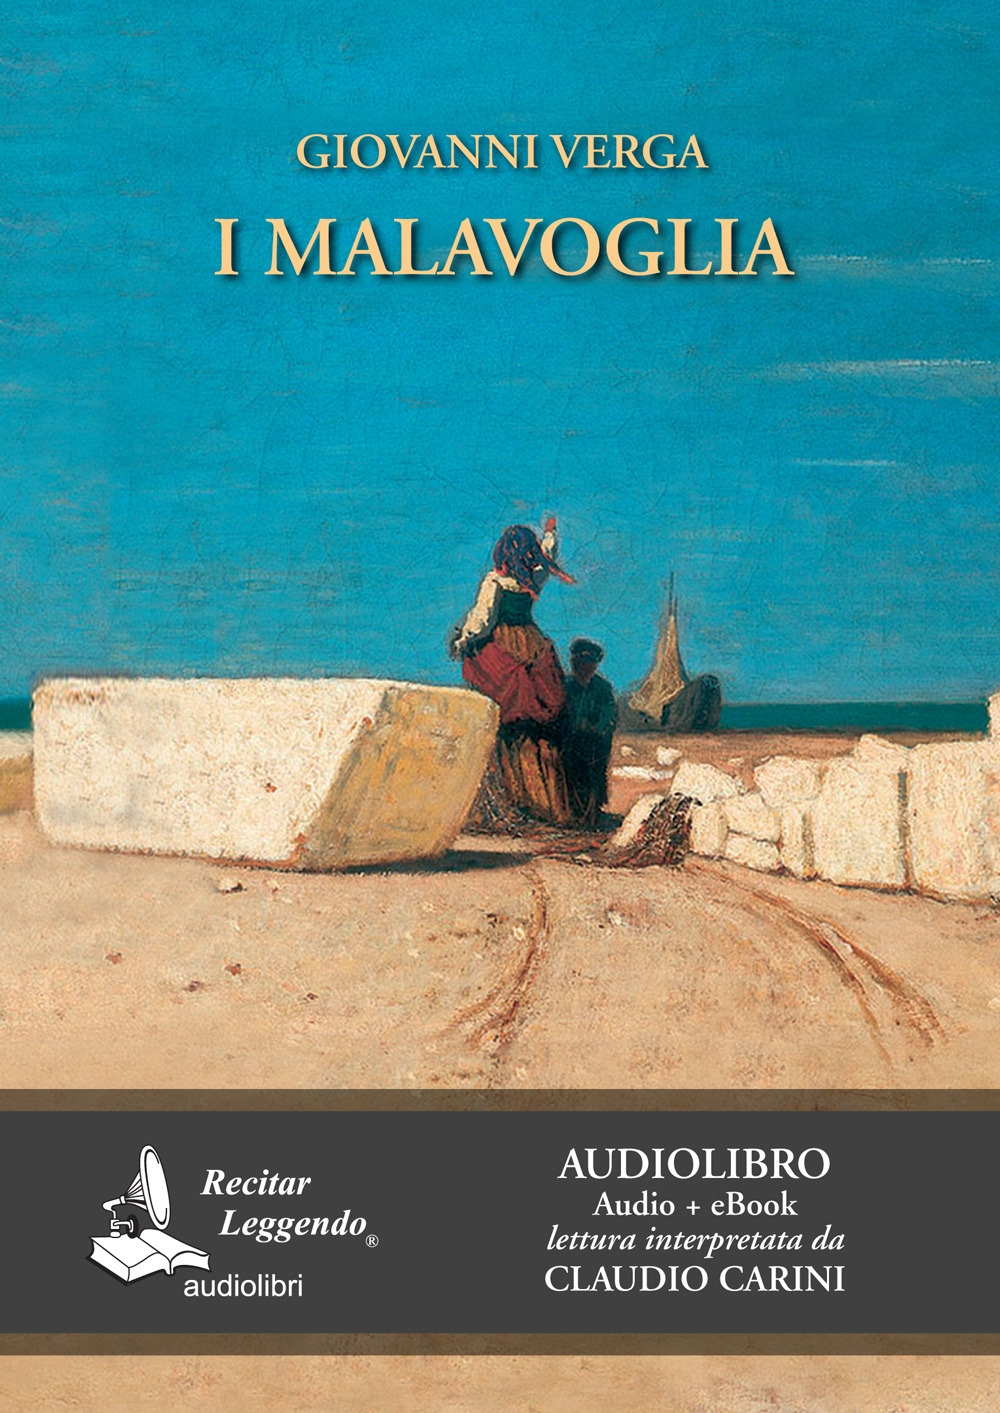 9788889352694 Giovanni Verga 2018 - I Malavoglia. Audiolibro. CD Audio  formato MP3 